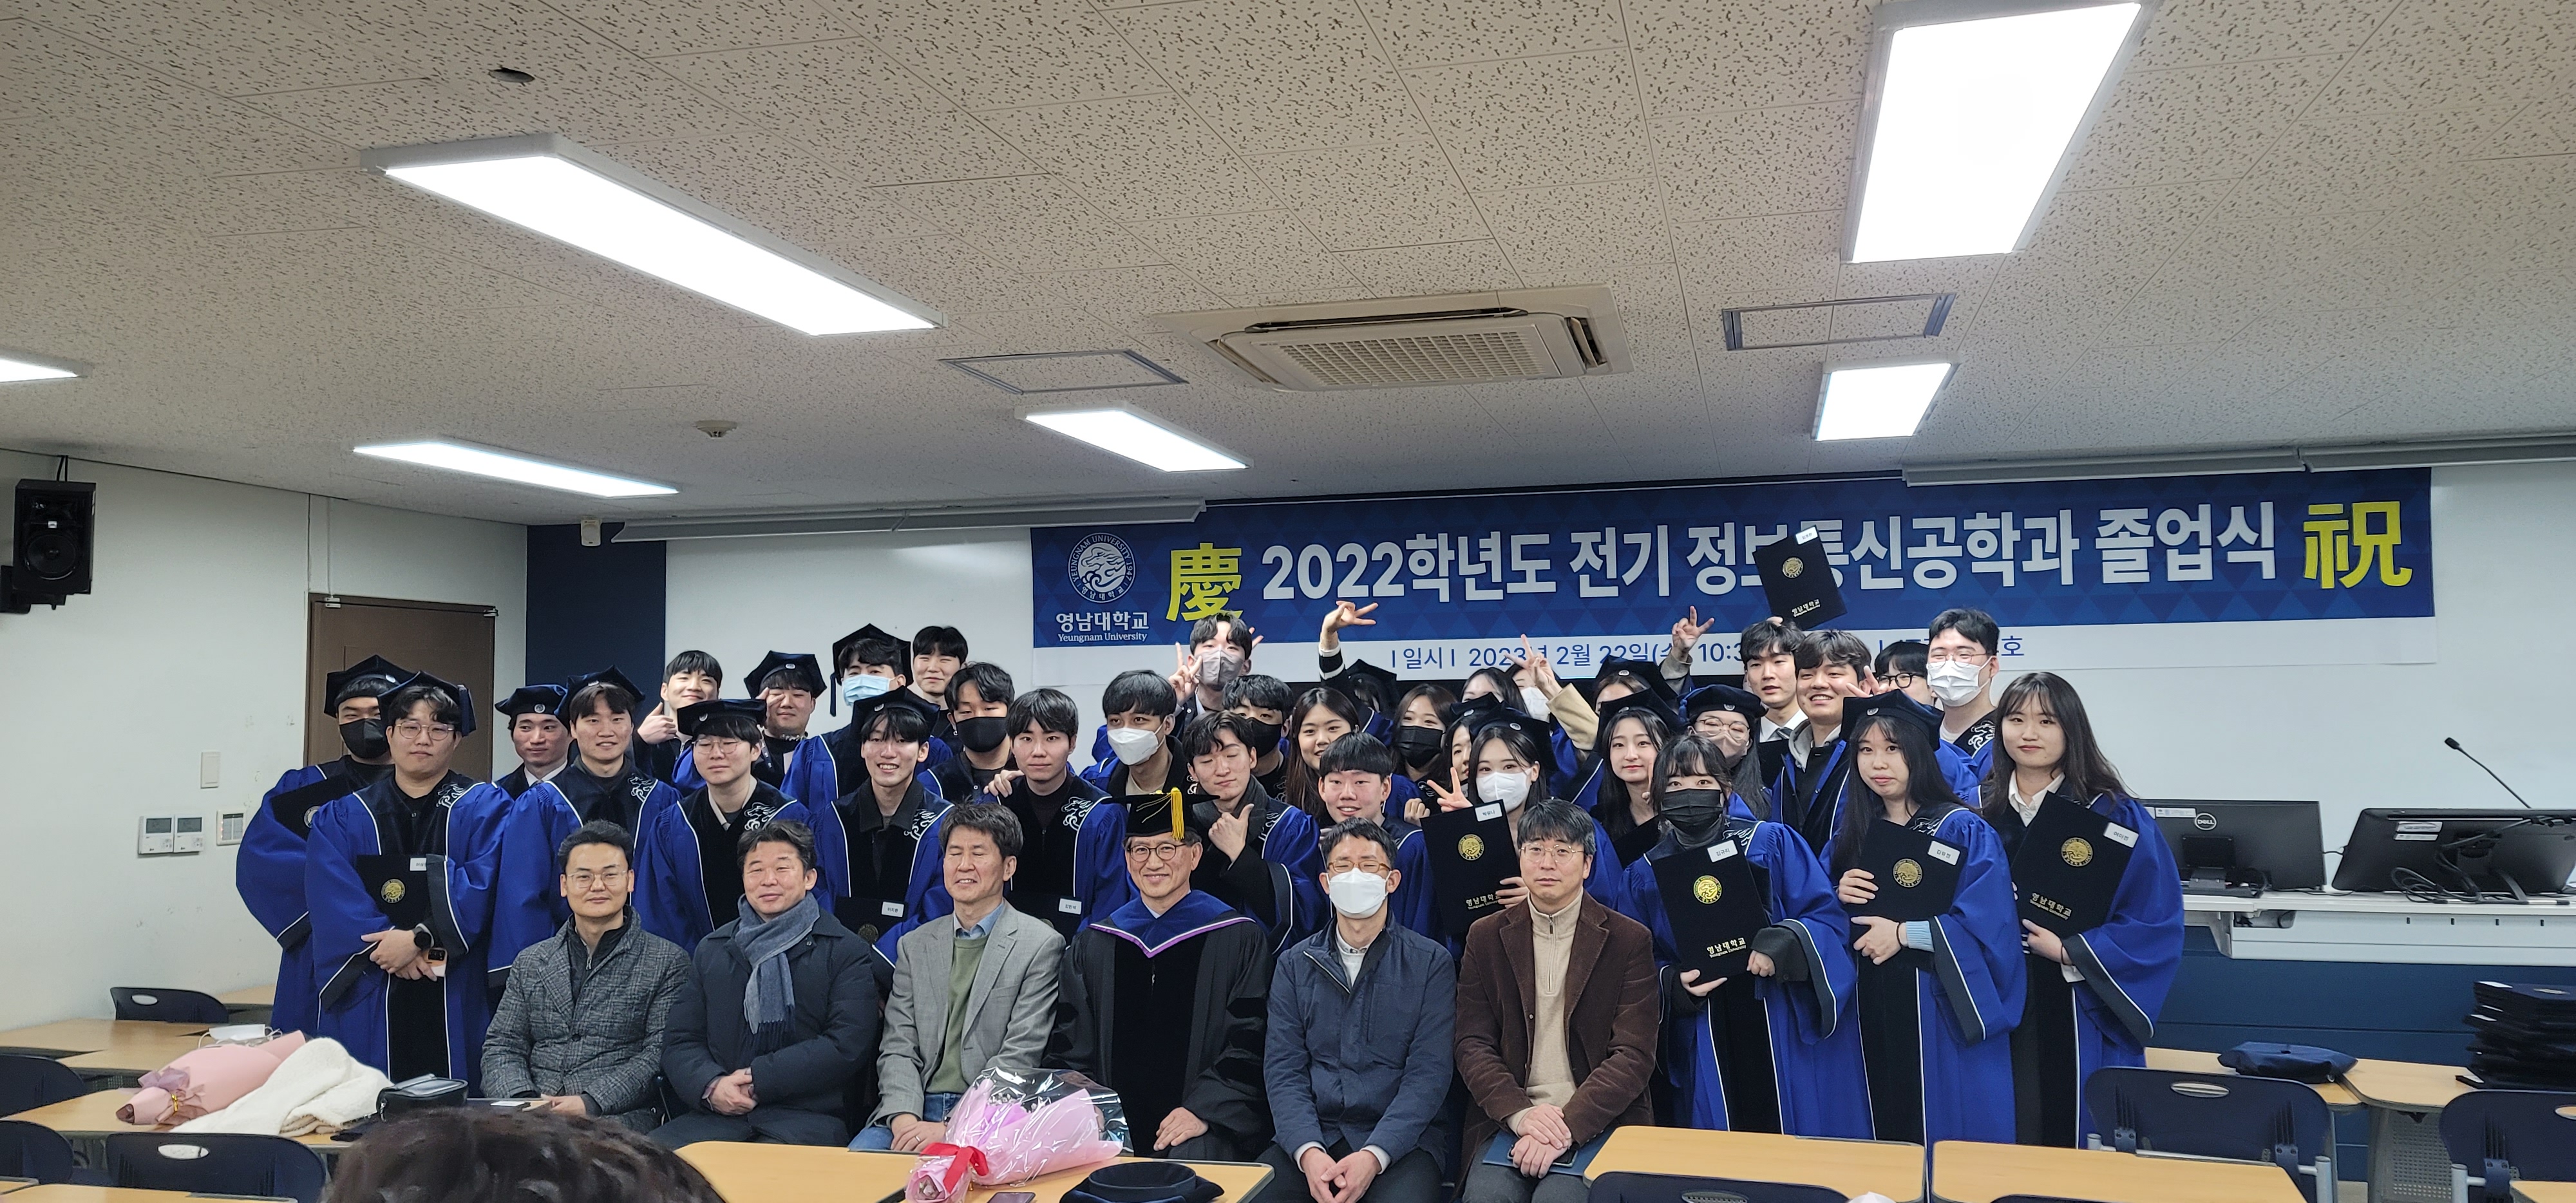 2022학년도 전기 졸업식 사진